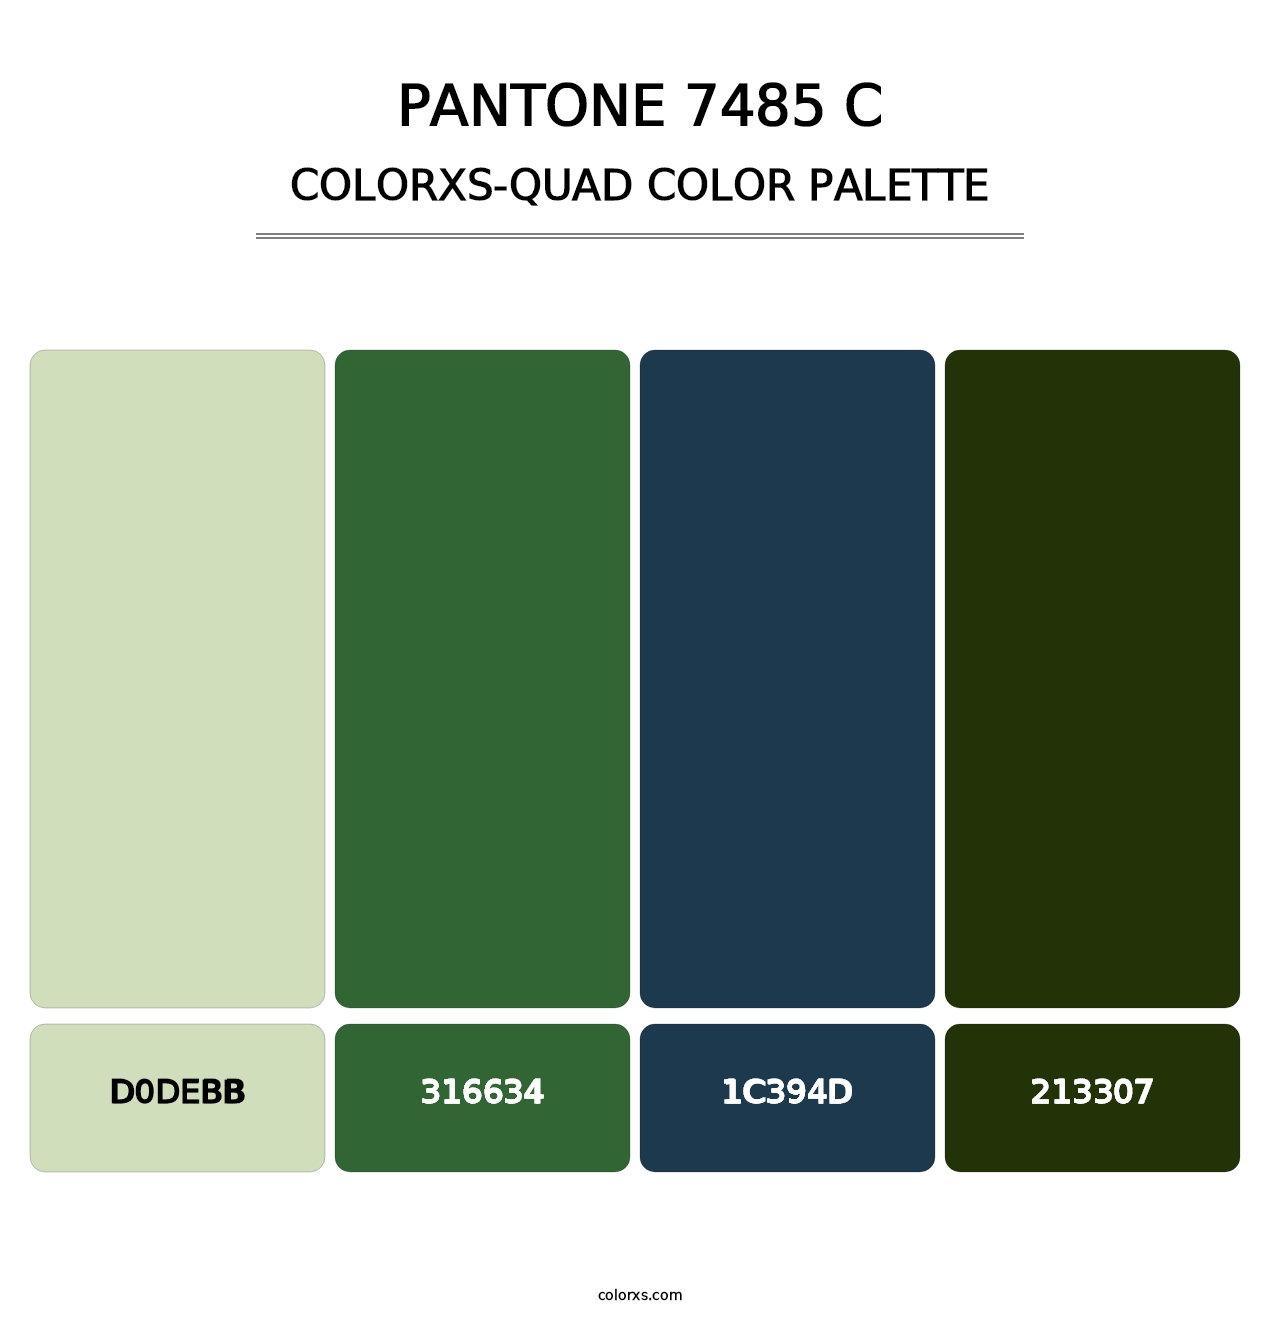 PANTONE 7485 C - Colorxs Quad Palette